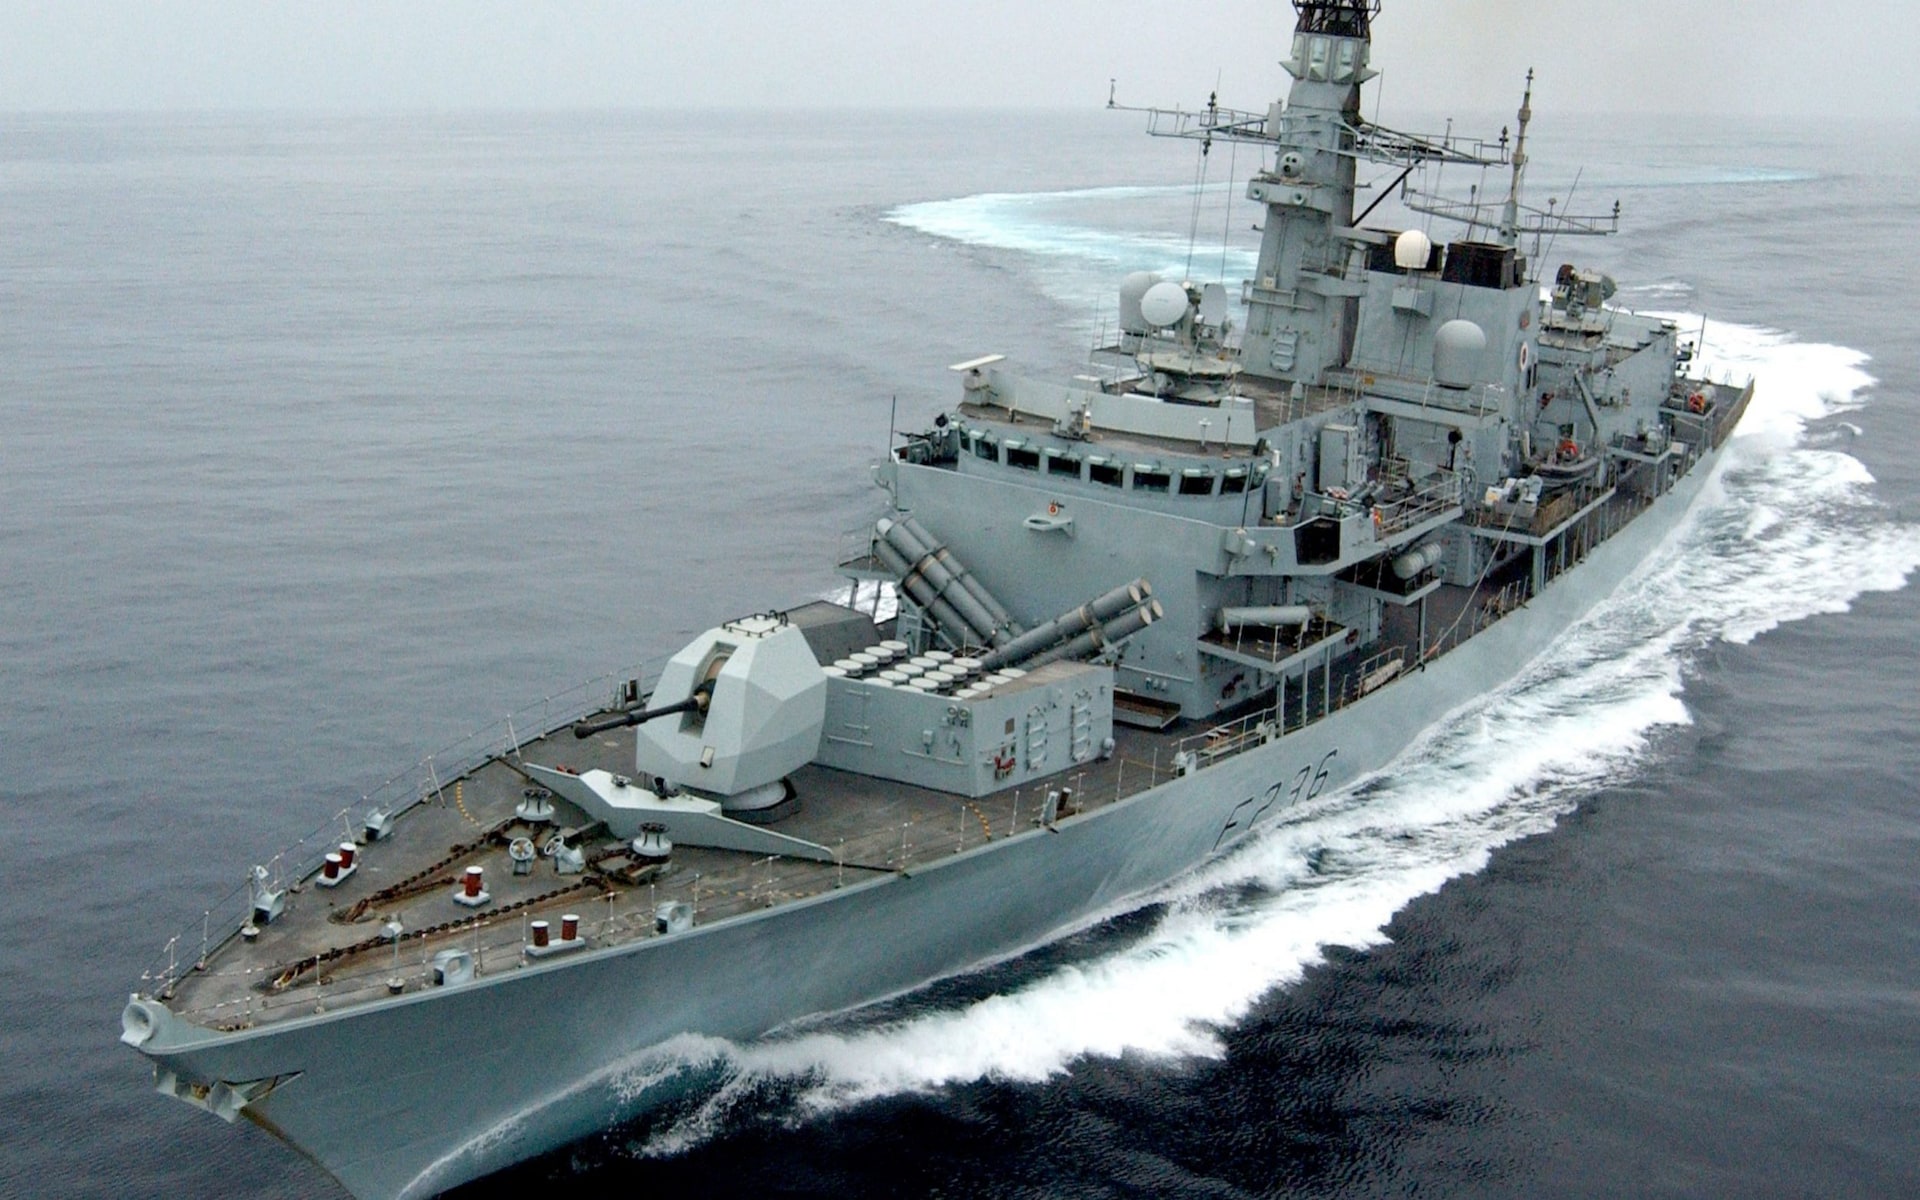 بعد مقتل سليماني: البحرية البريطانية سترافق السفن في الخليج